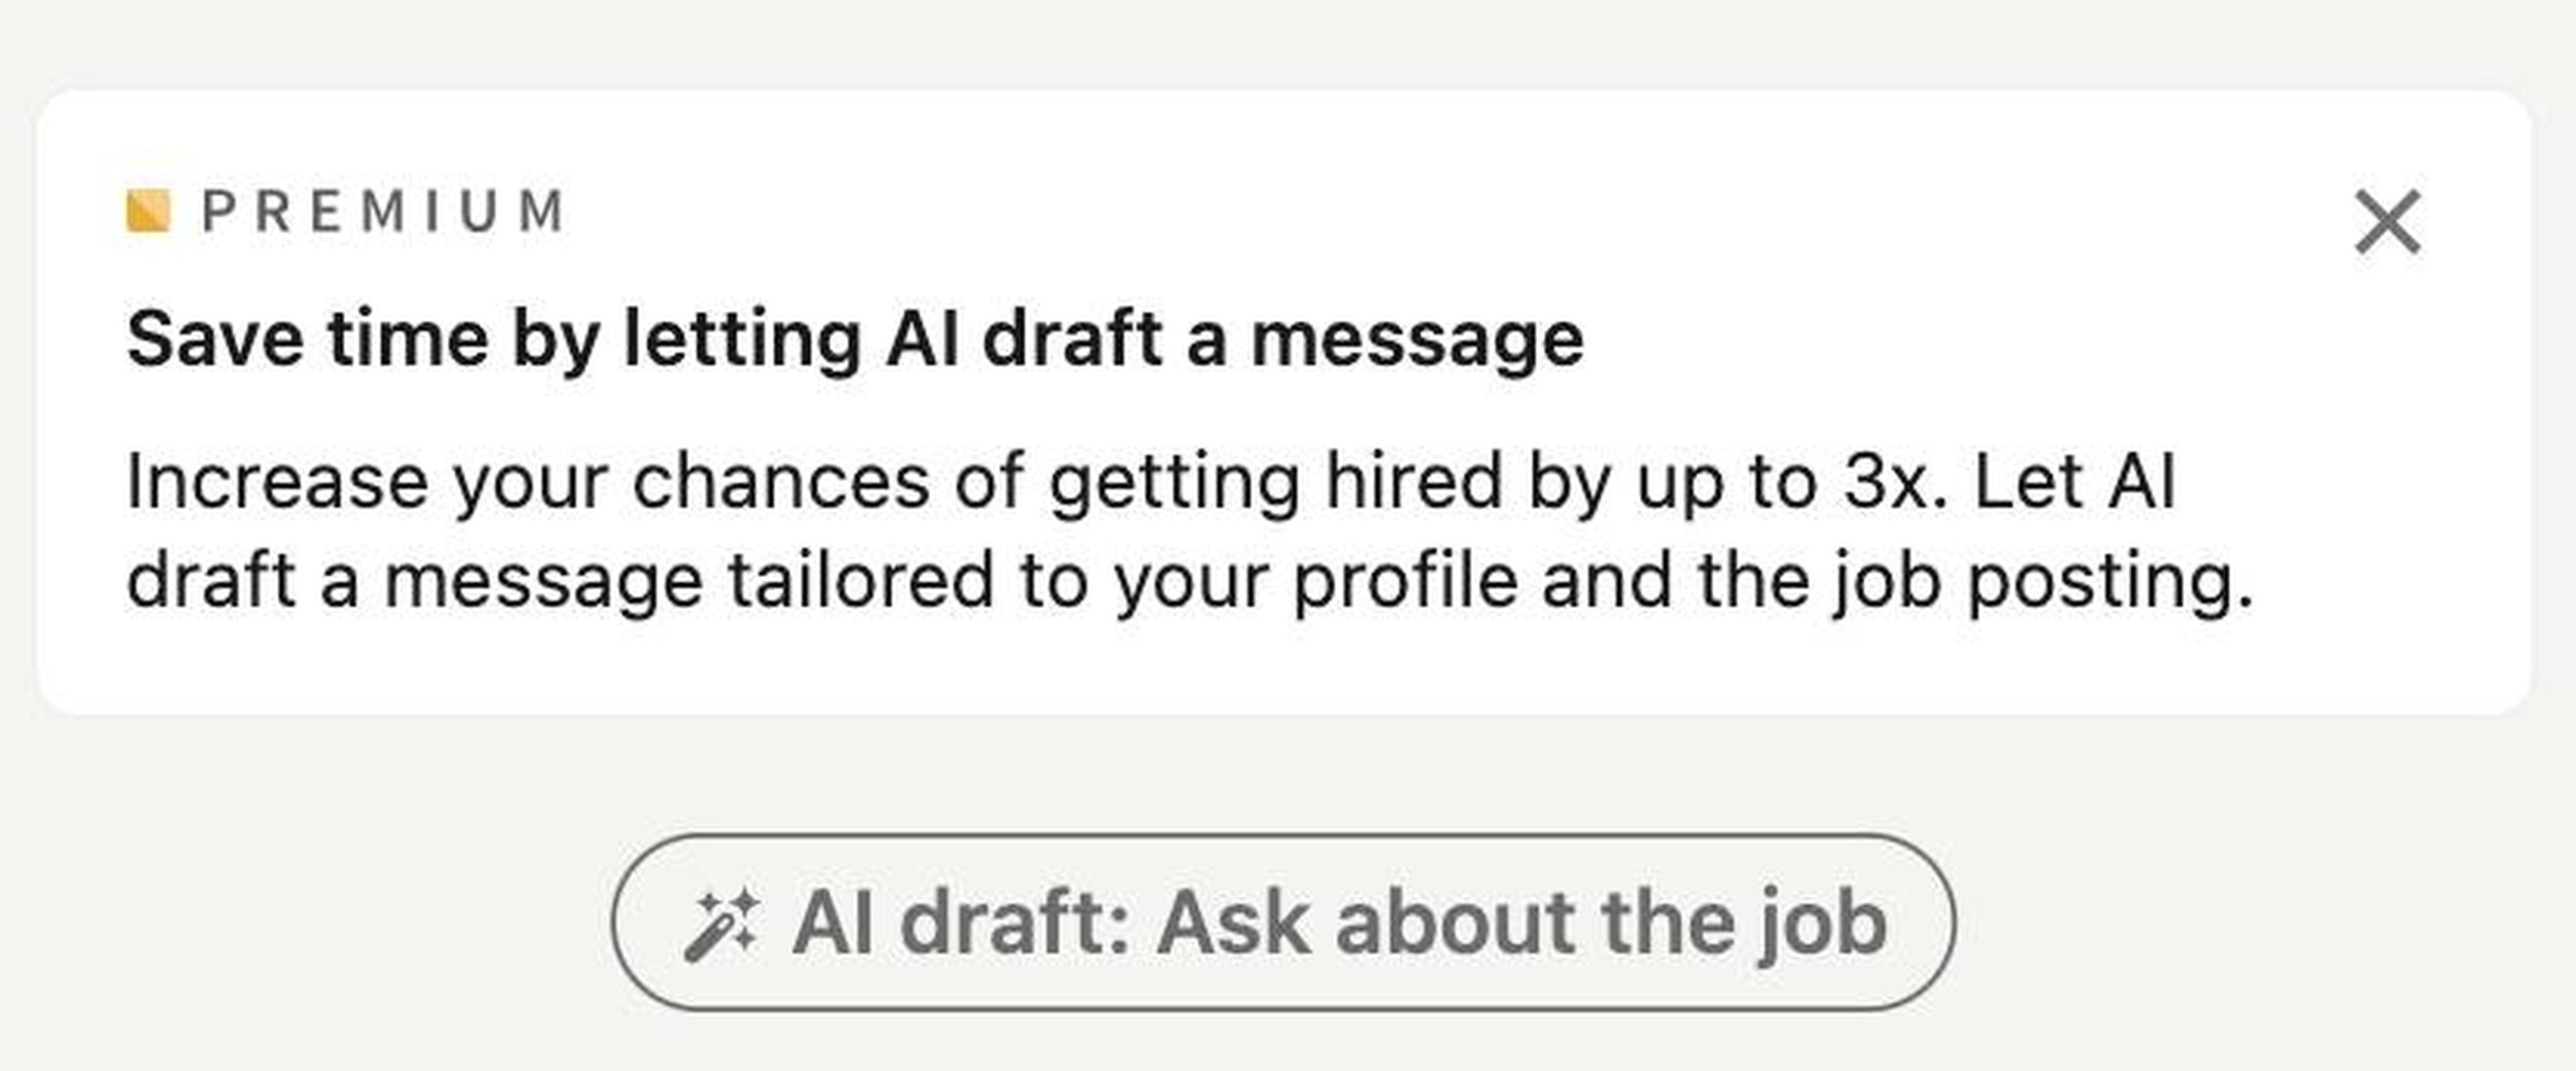 LinkedIn ha introducido diferentes funciones basadas en IA, como un bot que ayuda a los solicitantes de empleo a redactar mensajes para los reclutadores.